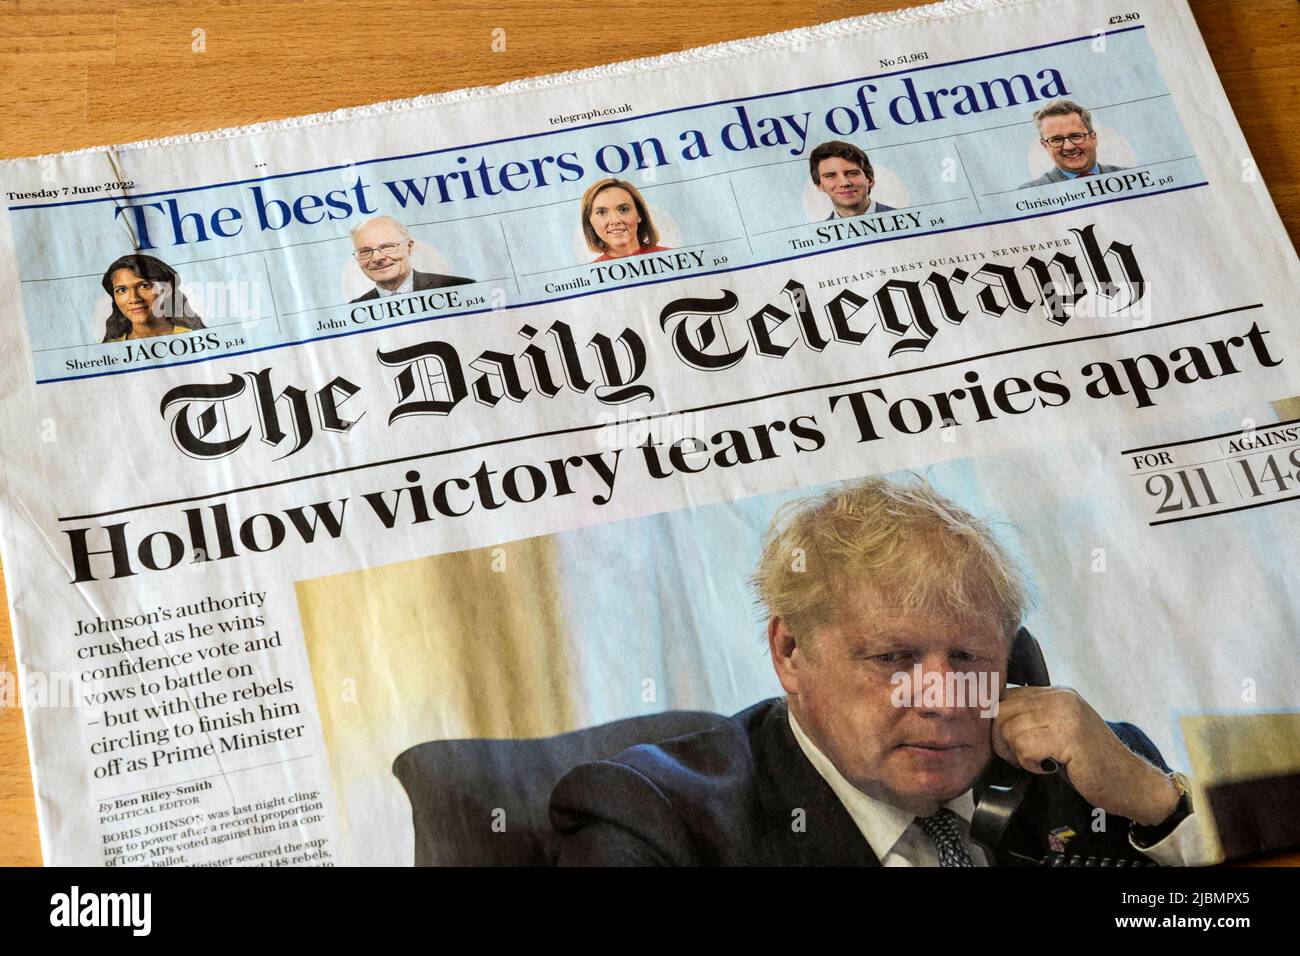 7 giugno 2022. Il titolo del quotidiano Daily Telegraph legge la vittoria vuota lacrime i Tories a parte, dopo che Boris Johnson sopravvive ad un voto di nessuna fiducia. Foto Stock